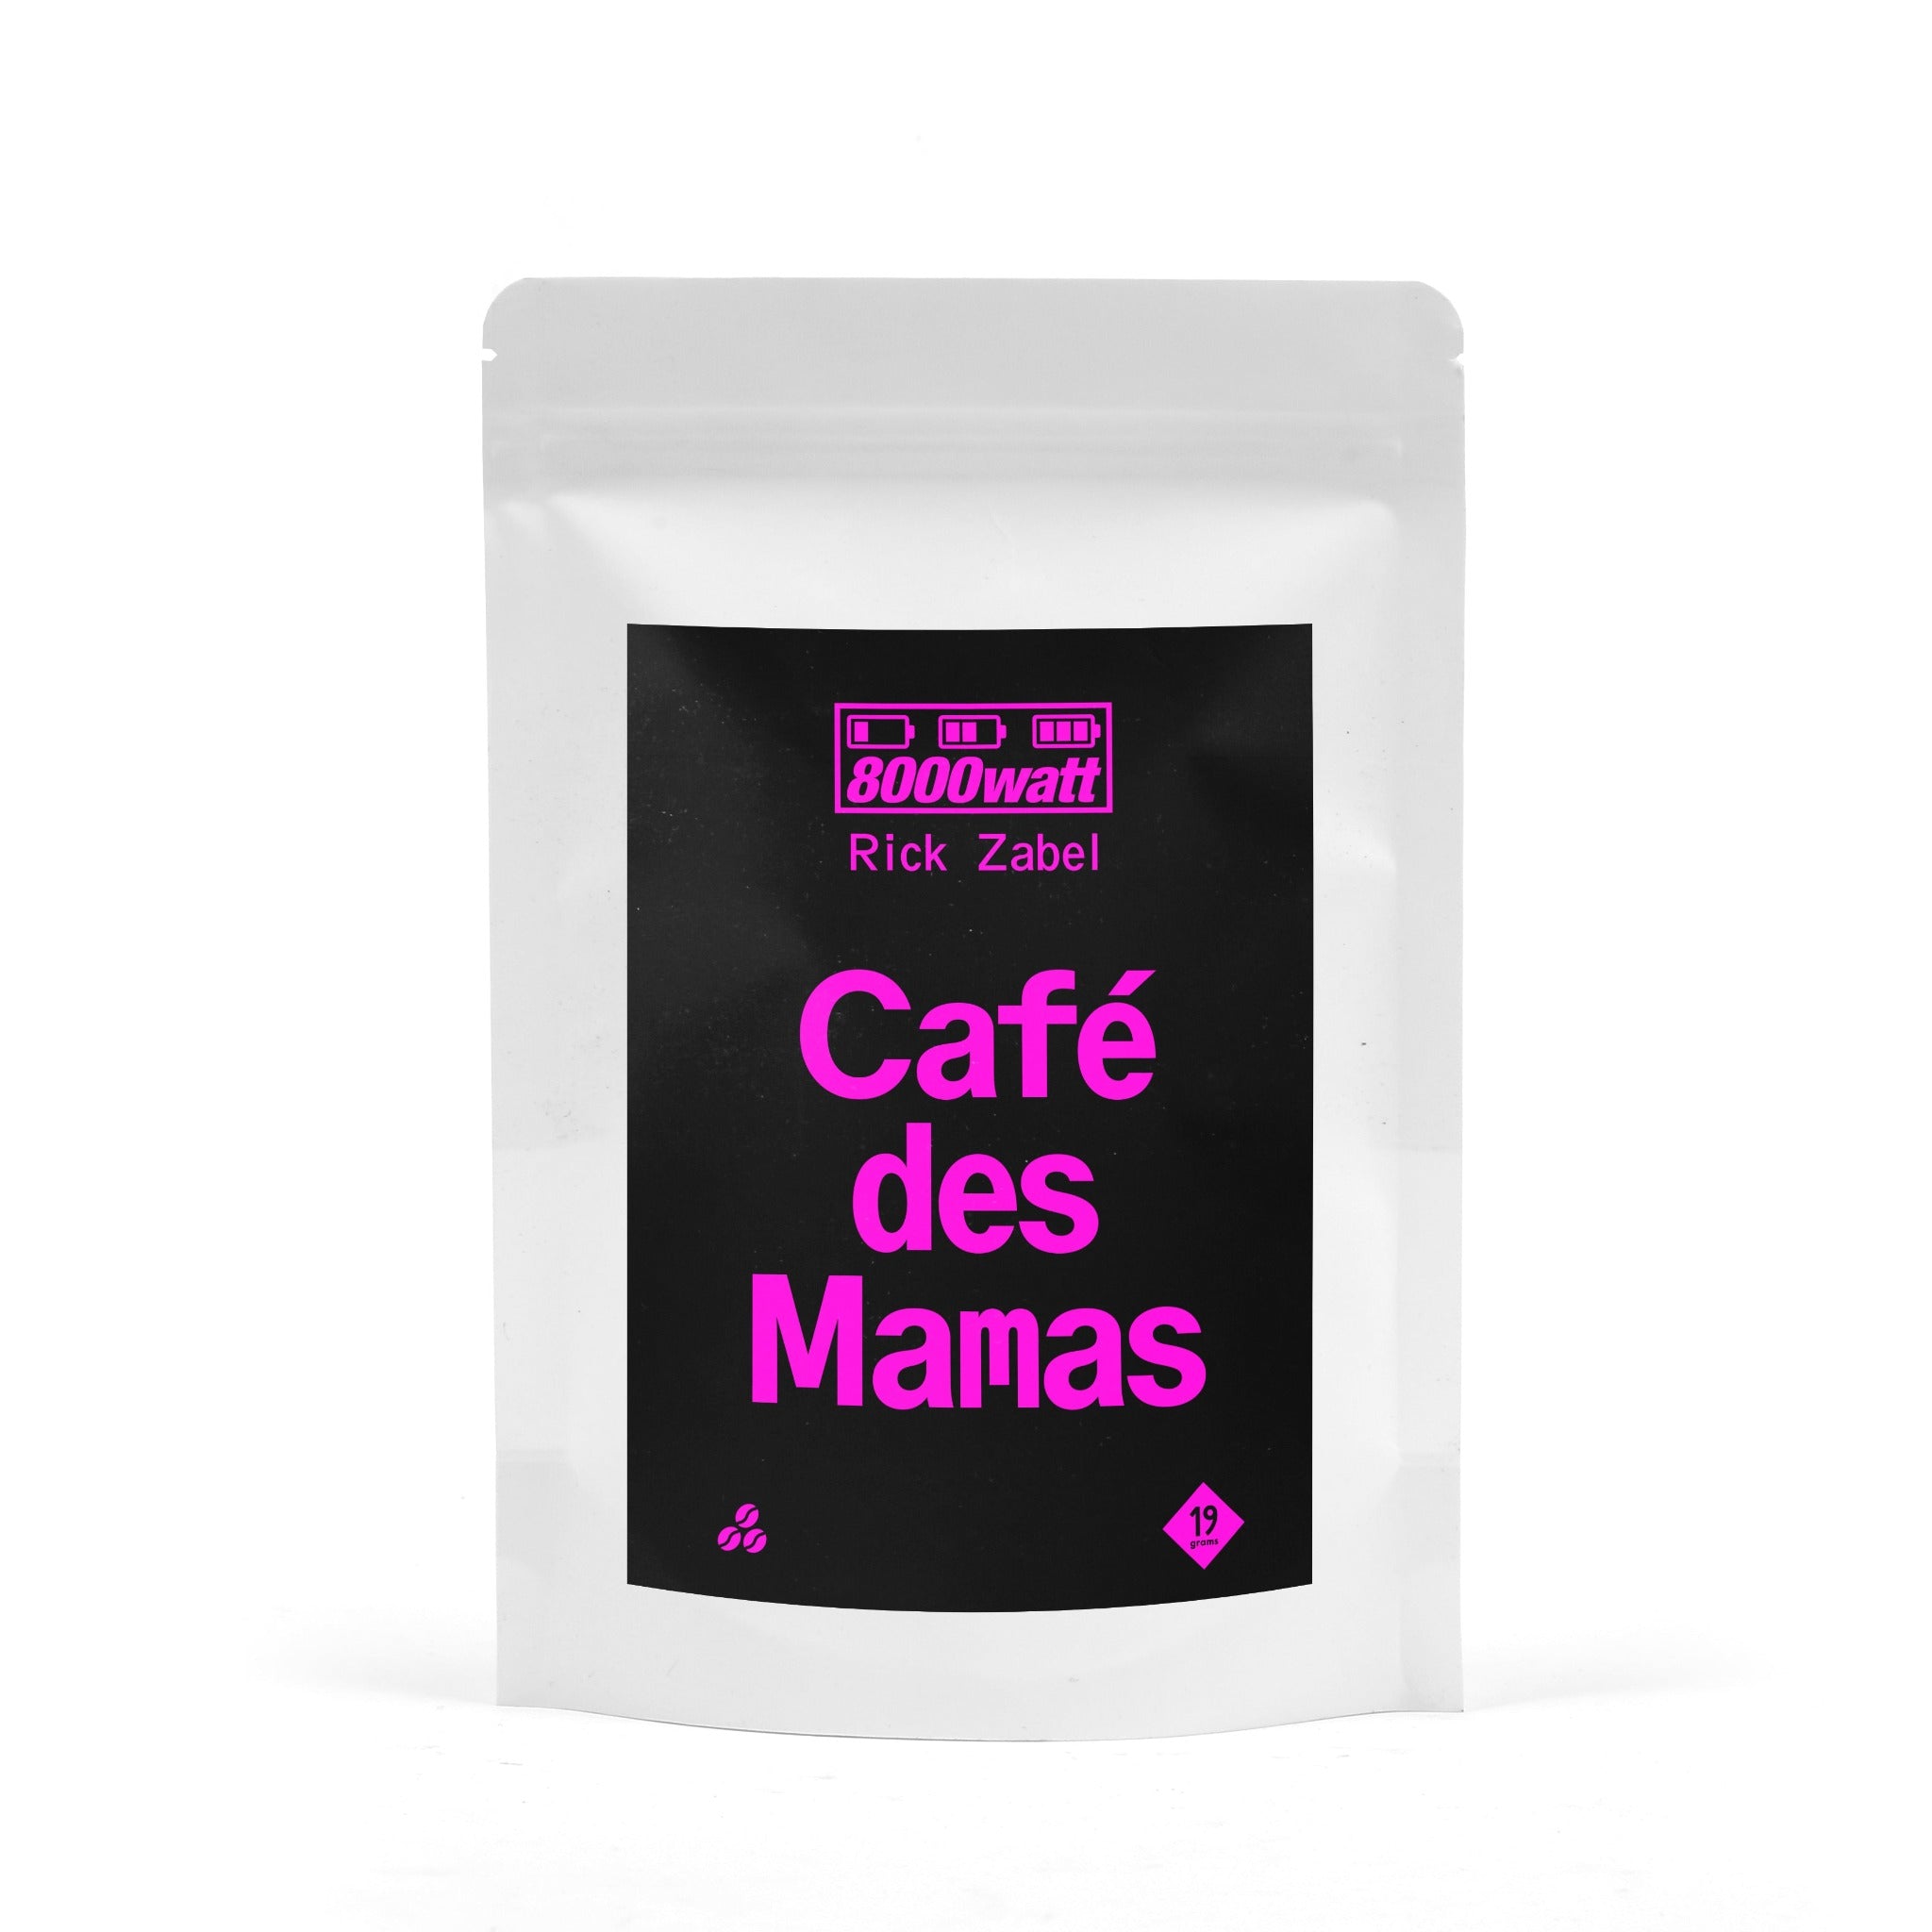 Deine 250g Tüte Cafe des Mamas Kaffee 8000watt